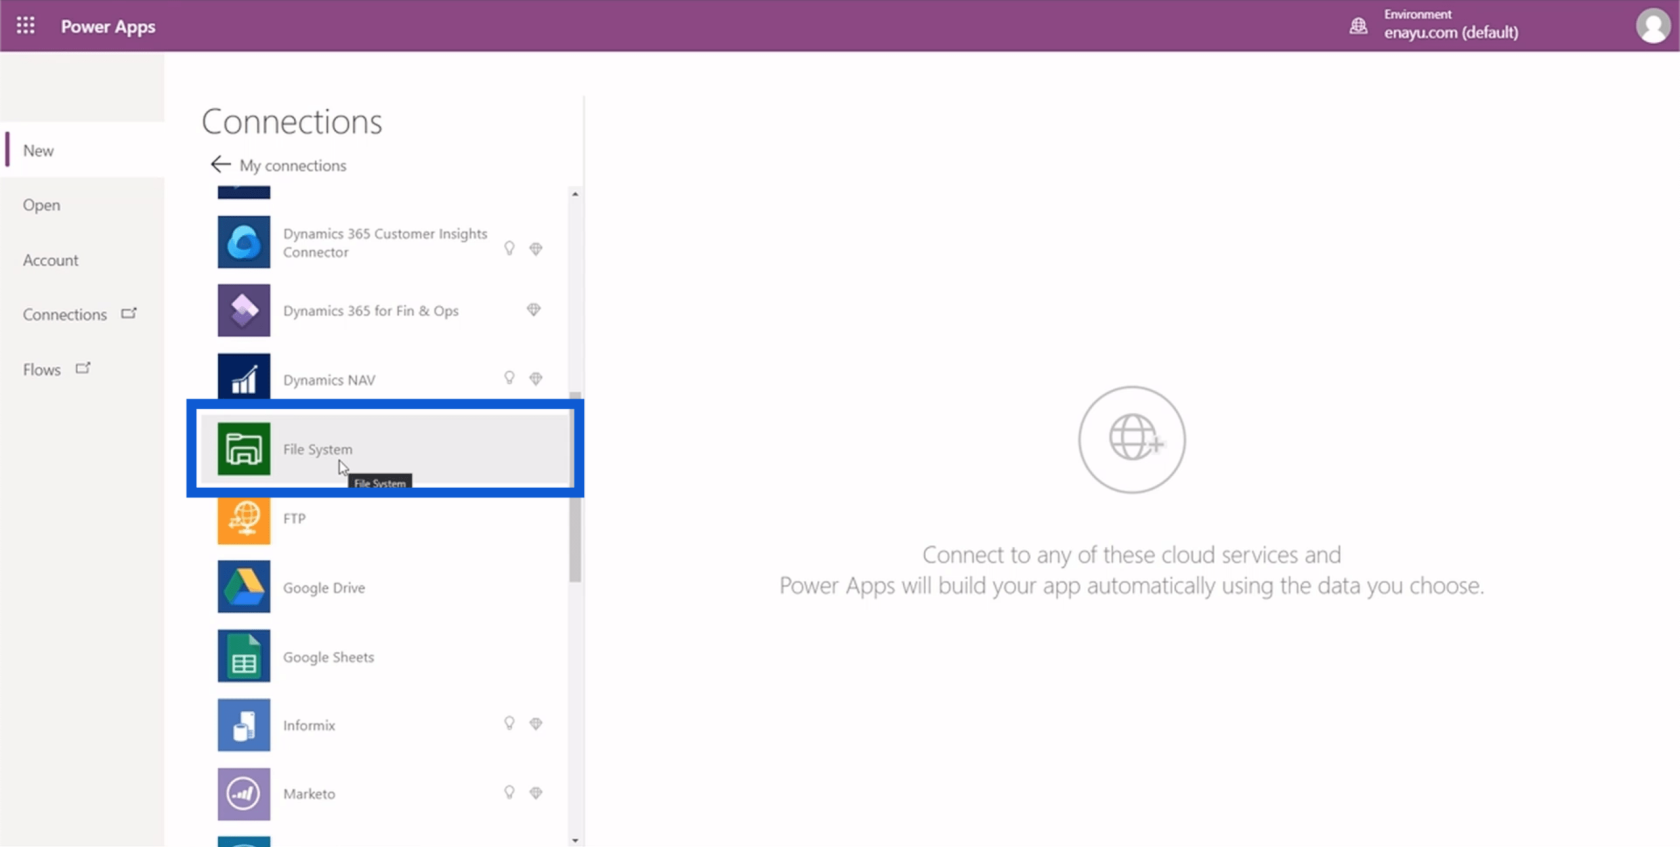 Einrichtung der Power Apps-Umgebung: Verbindung zu OneDrive und Google Drive herstellen